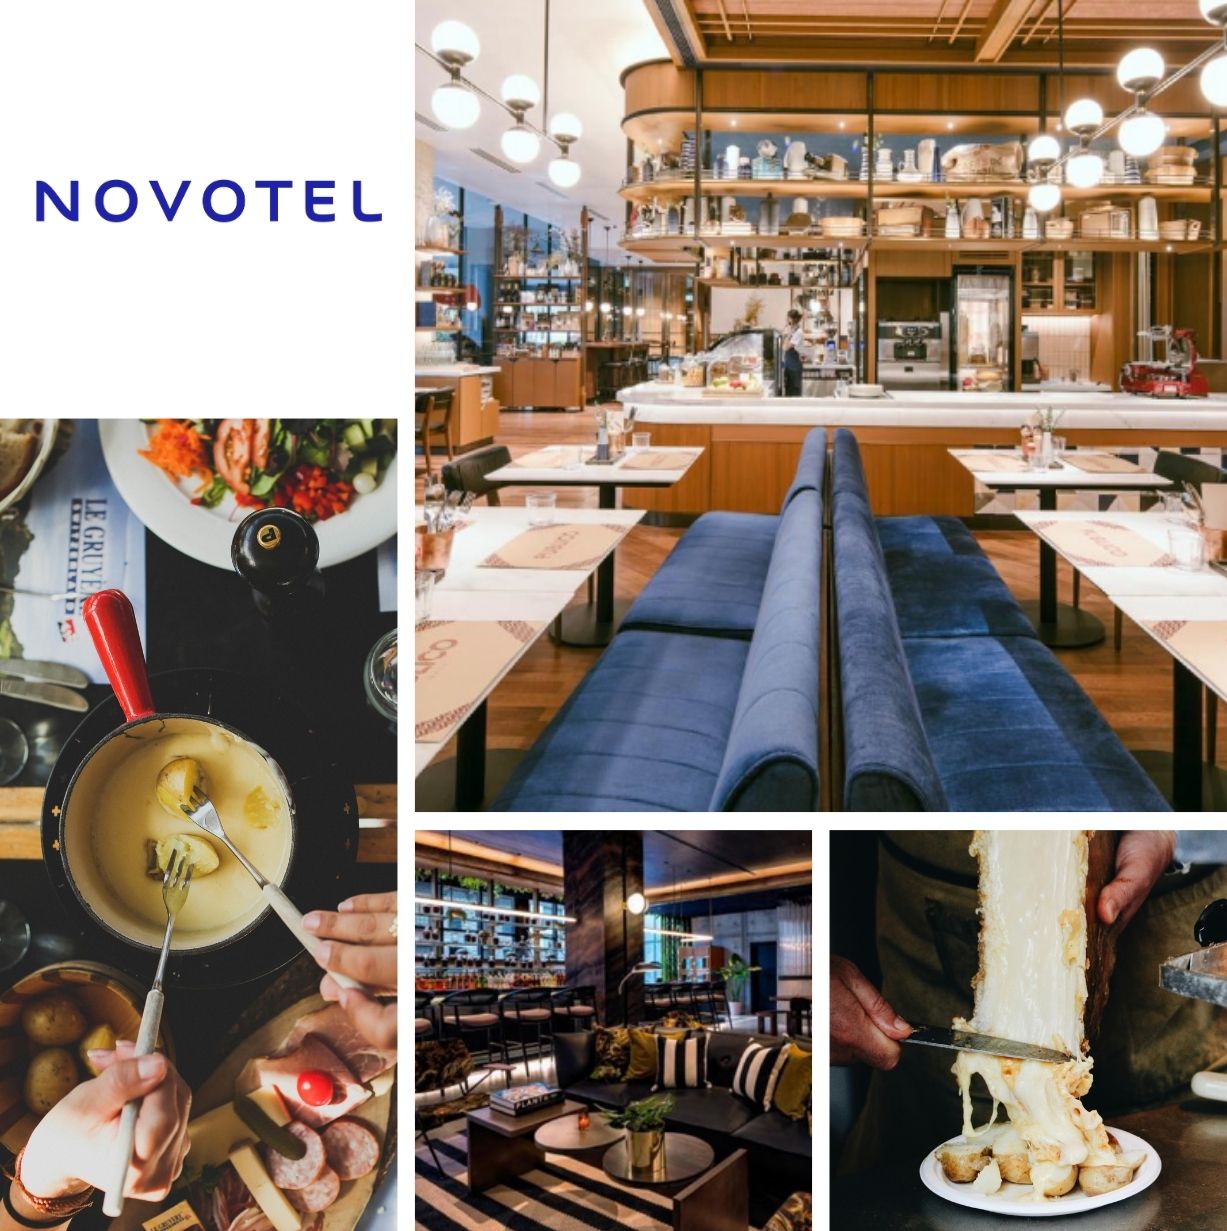 Sélection de photos illustrant le Novotel d'Annemasse : nos équipes ont travaillé sur un nouveau concept pour le Rooftop et le restaurant afin d'attirer la clientèle extérieure